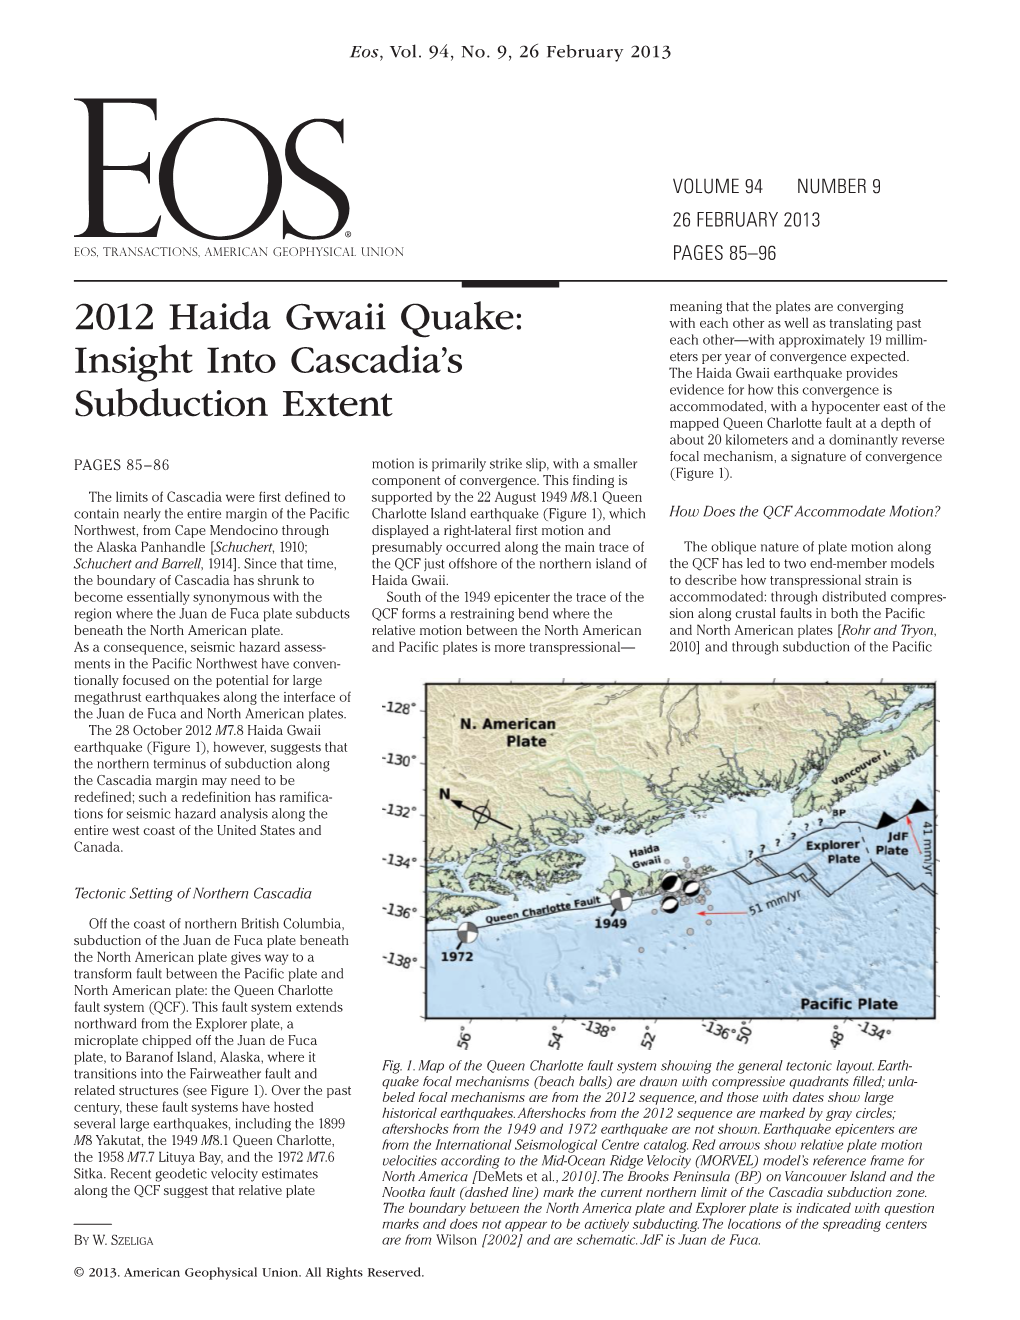 2012 Haida Gwaii Quake: Insight Into Cascadias Subduction Extent